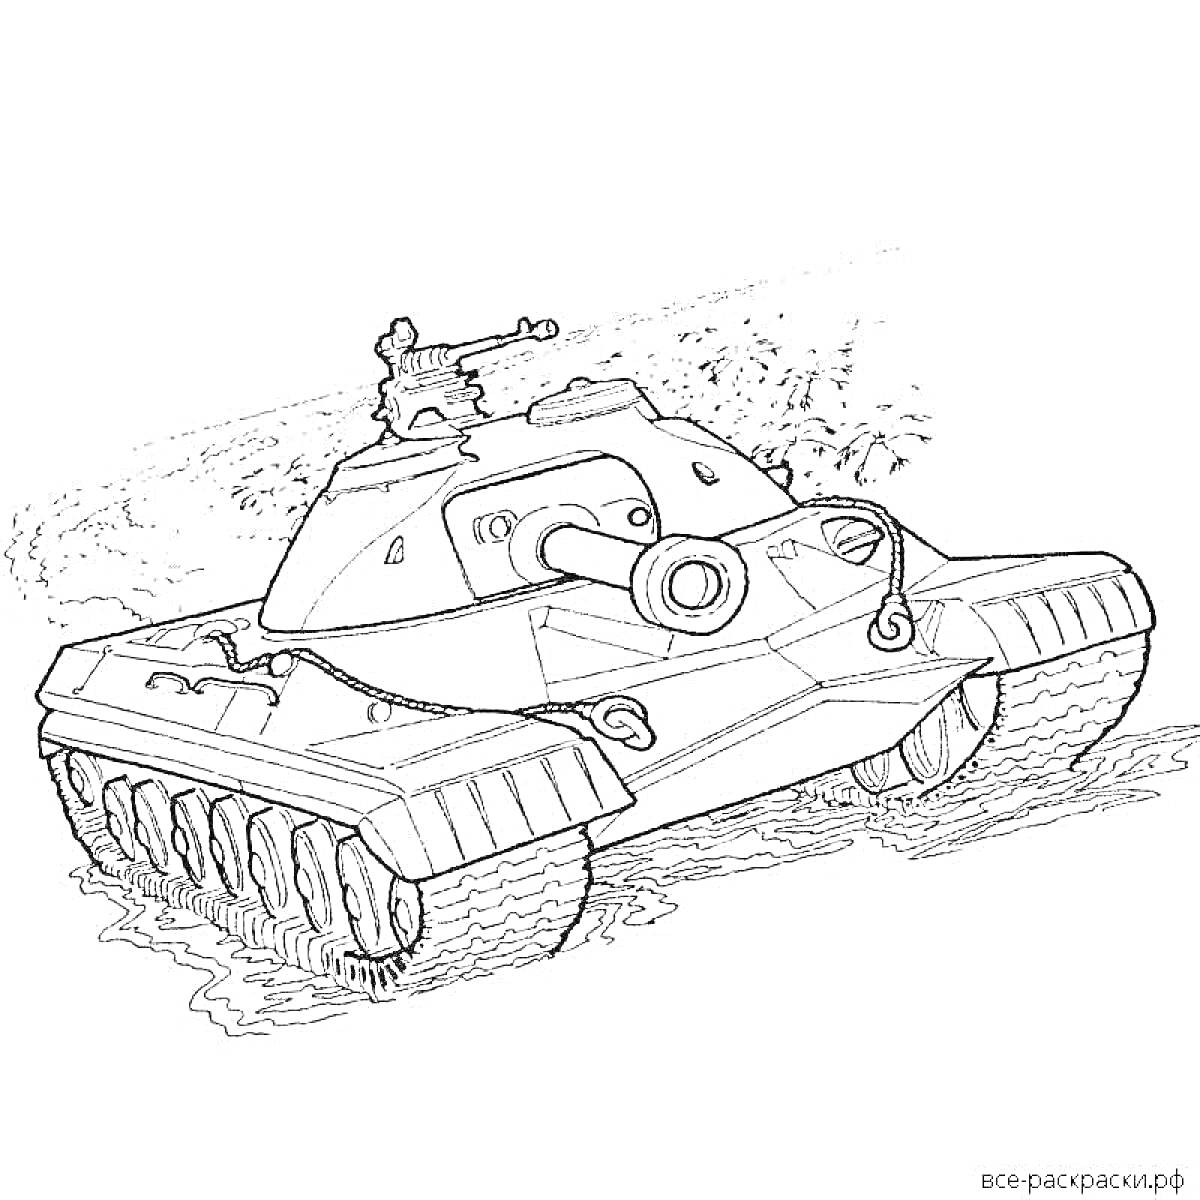 Раскраска Танк ИС-7 с солдатом на верхнем люке на фоне земли с растительностью.